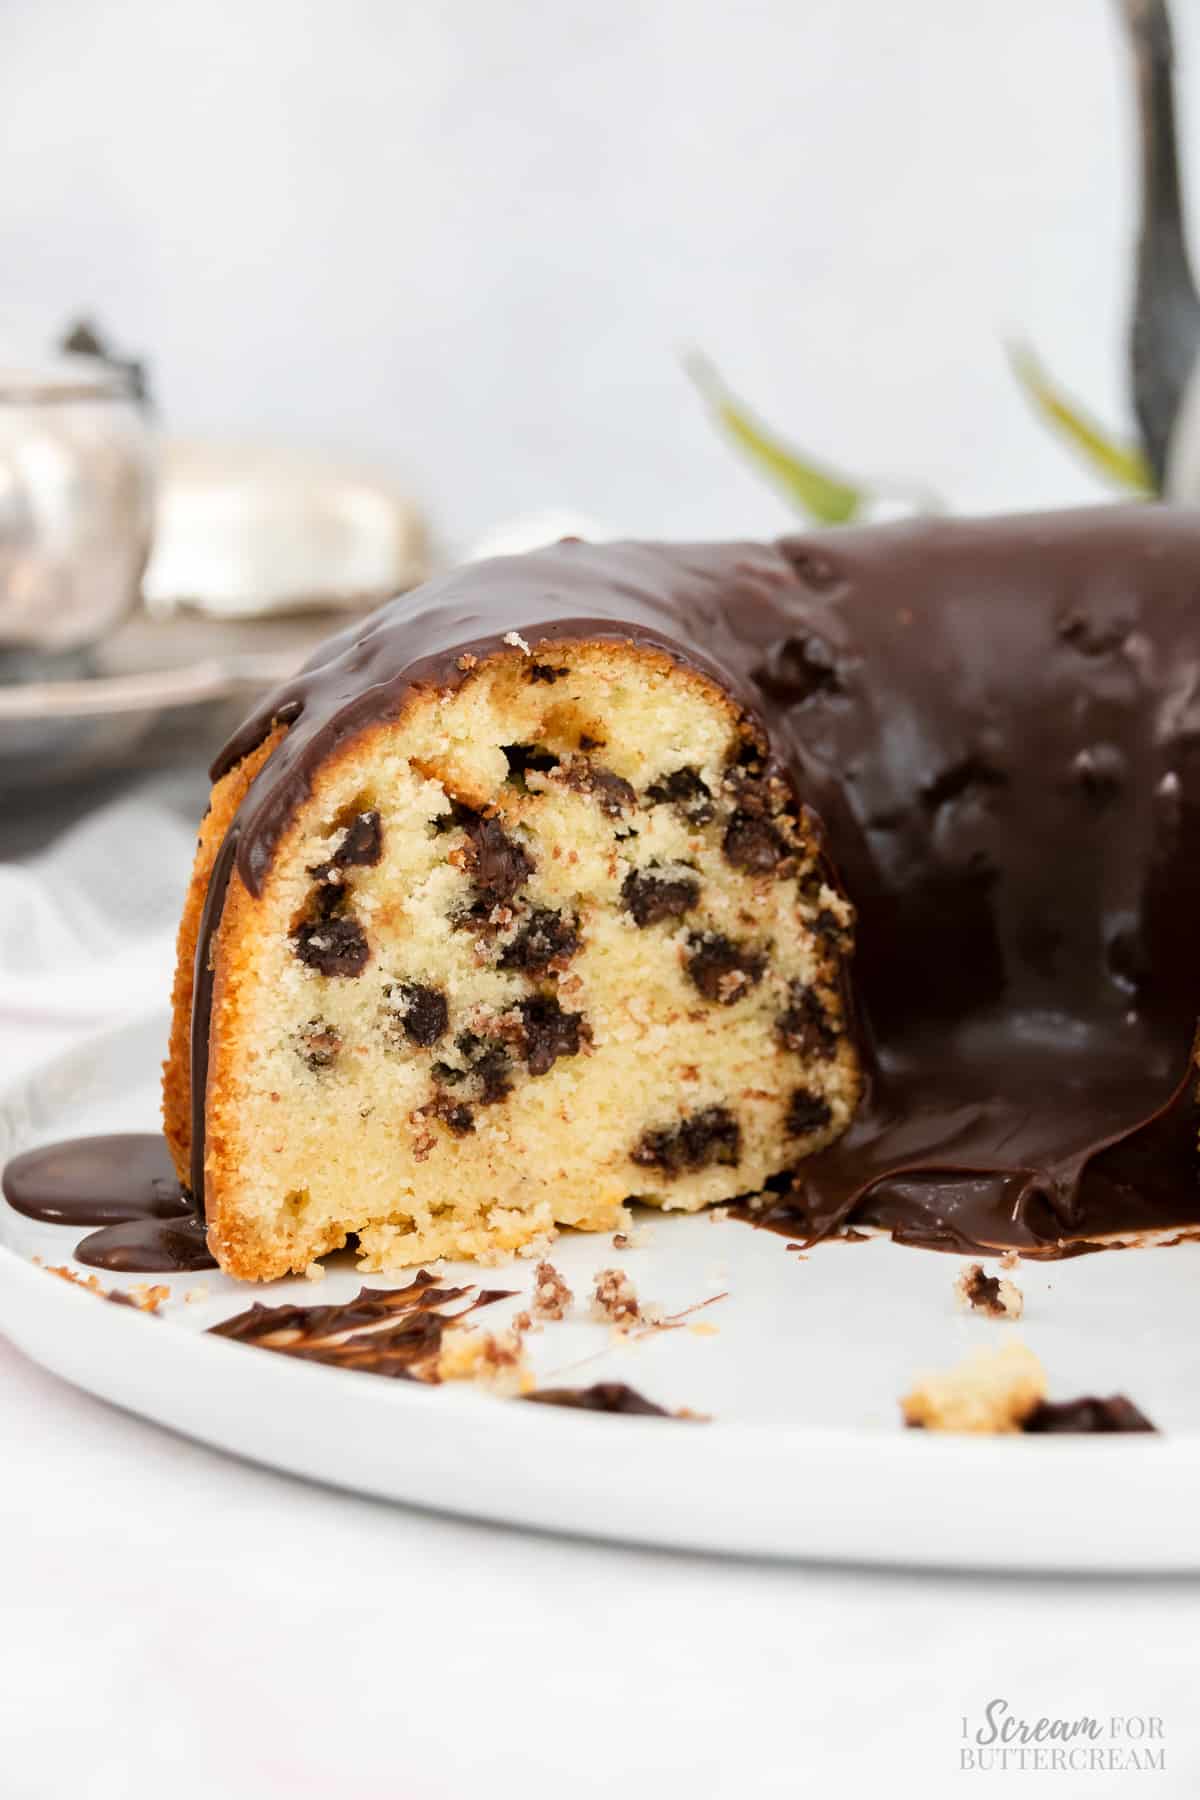 View of cut bundt cake with chocolate glaze.